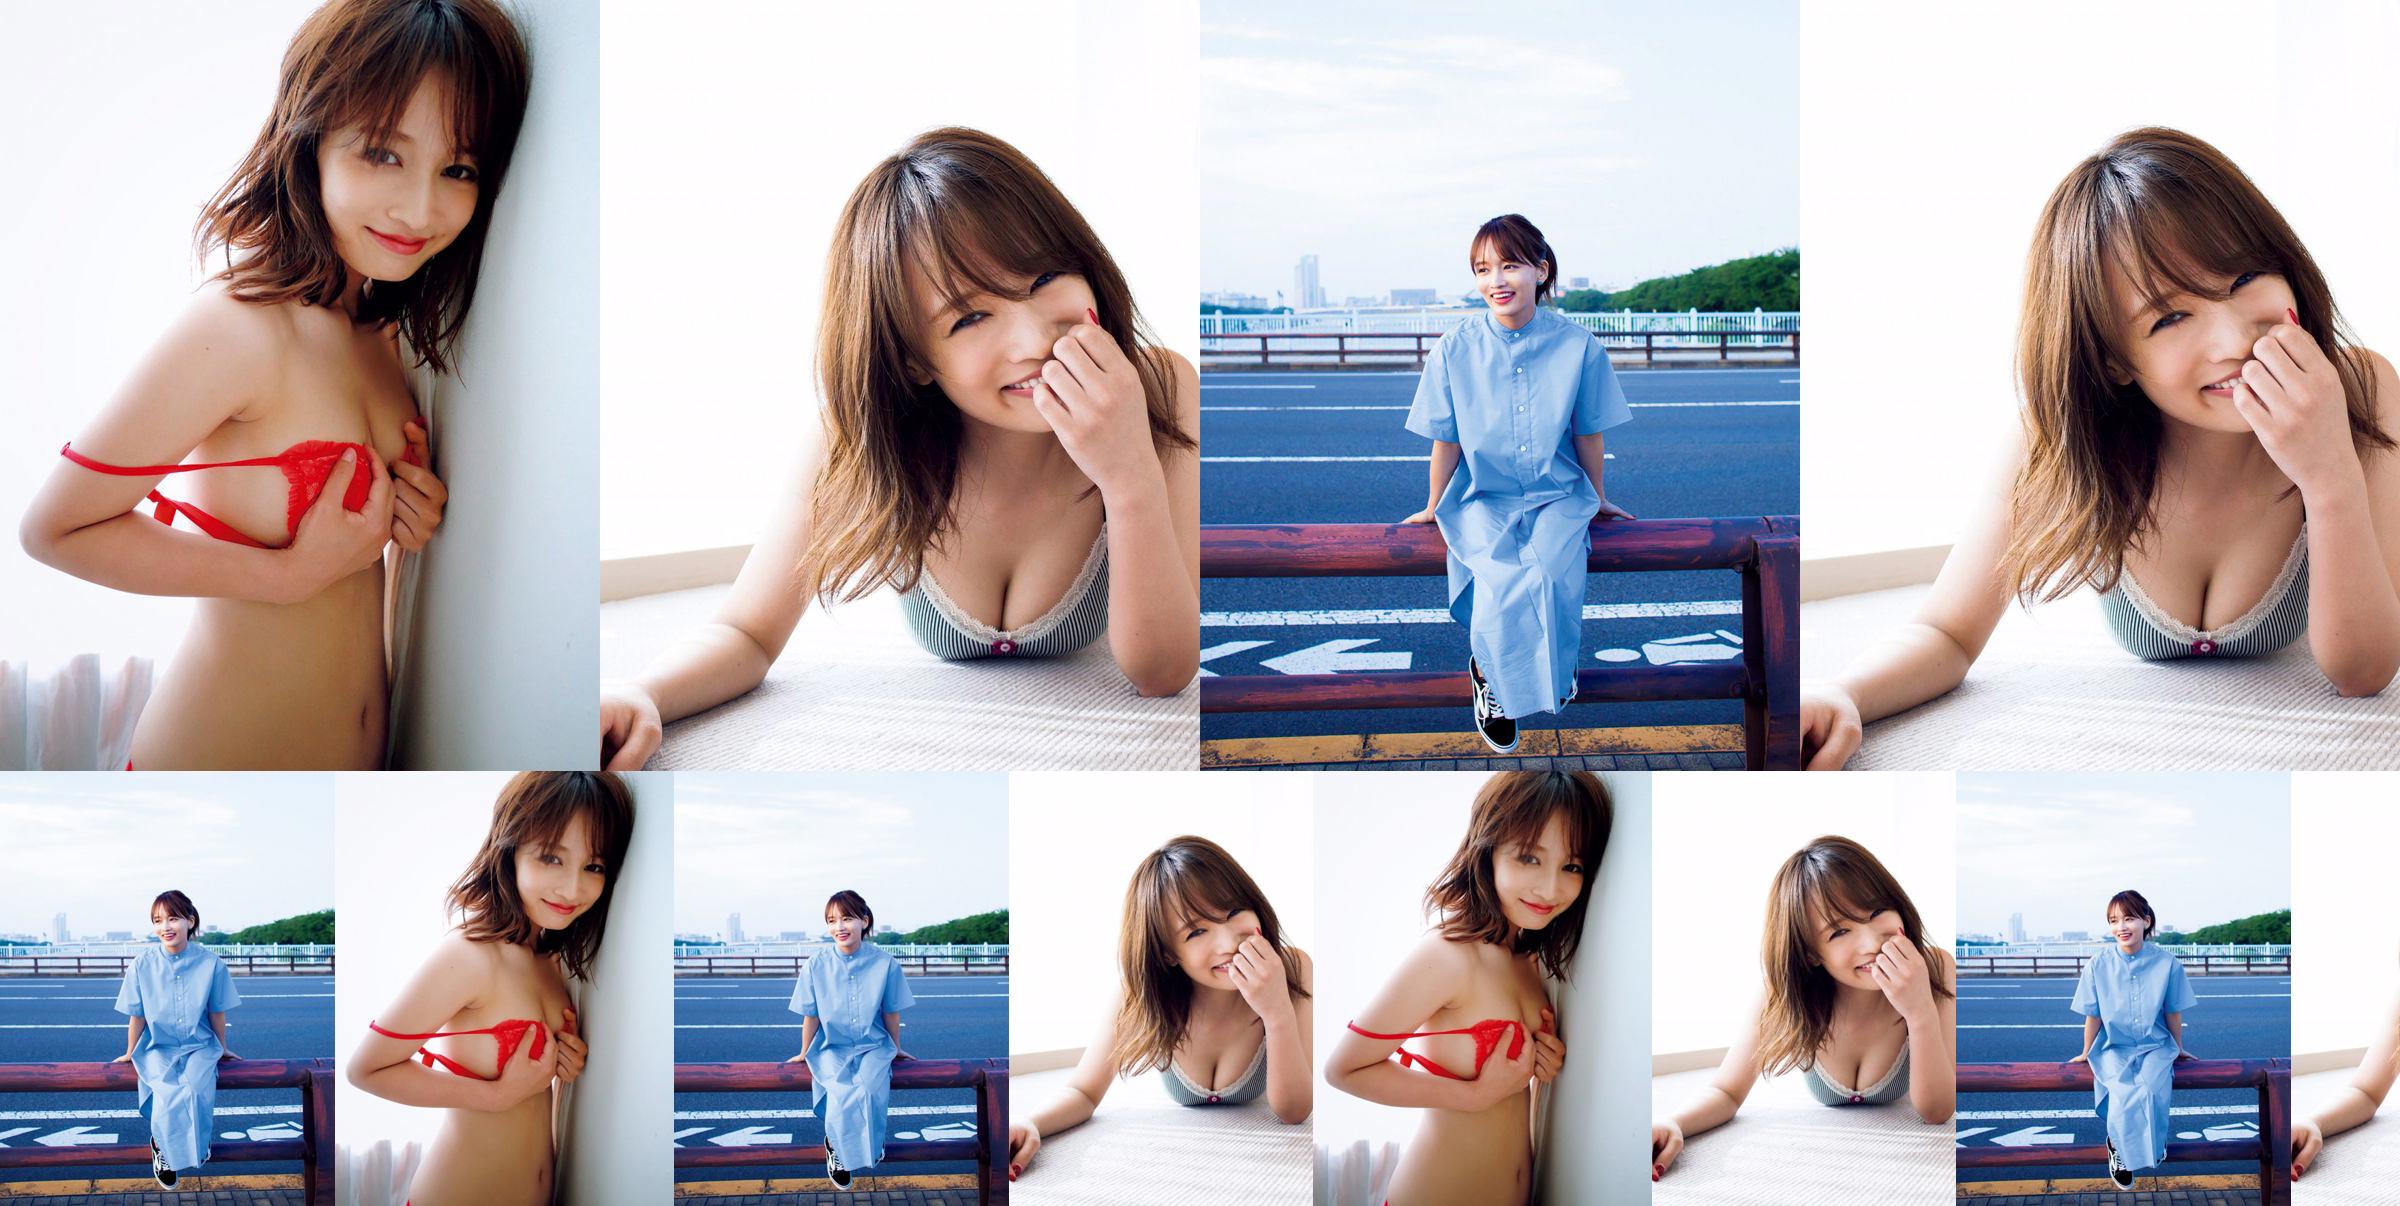 [VIERNES] Mai Watanabe "Copa F con un cuerpo delgado" foto No.b135a4 Página 3